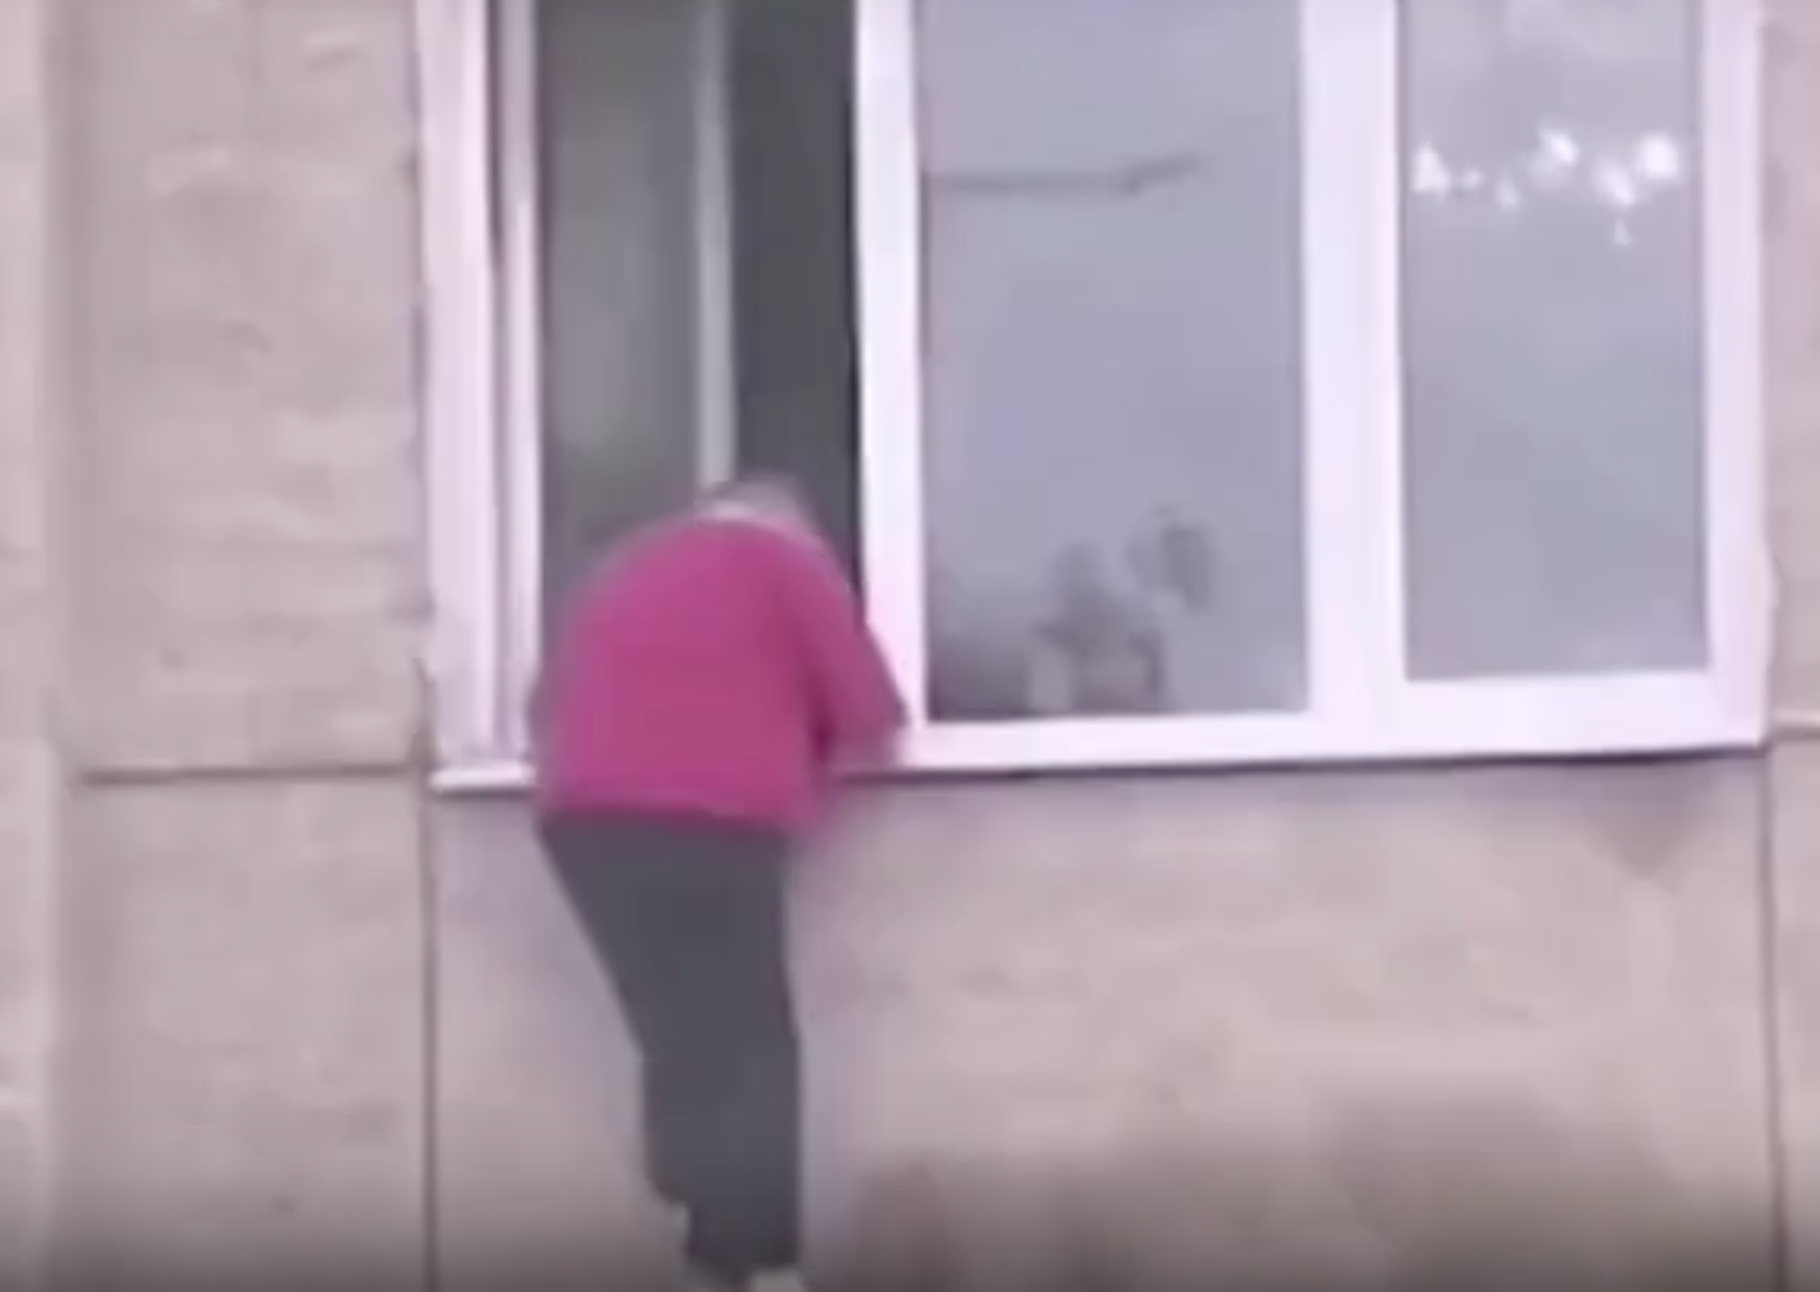 Пенсионерка выпала из окна многоэтажки в Чите. Она скончалась. Видео 